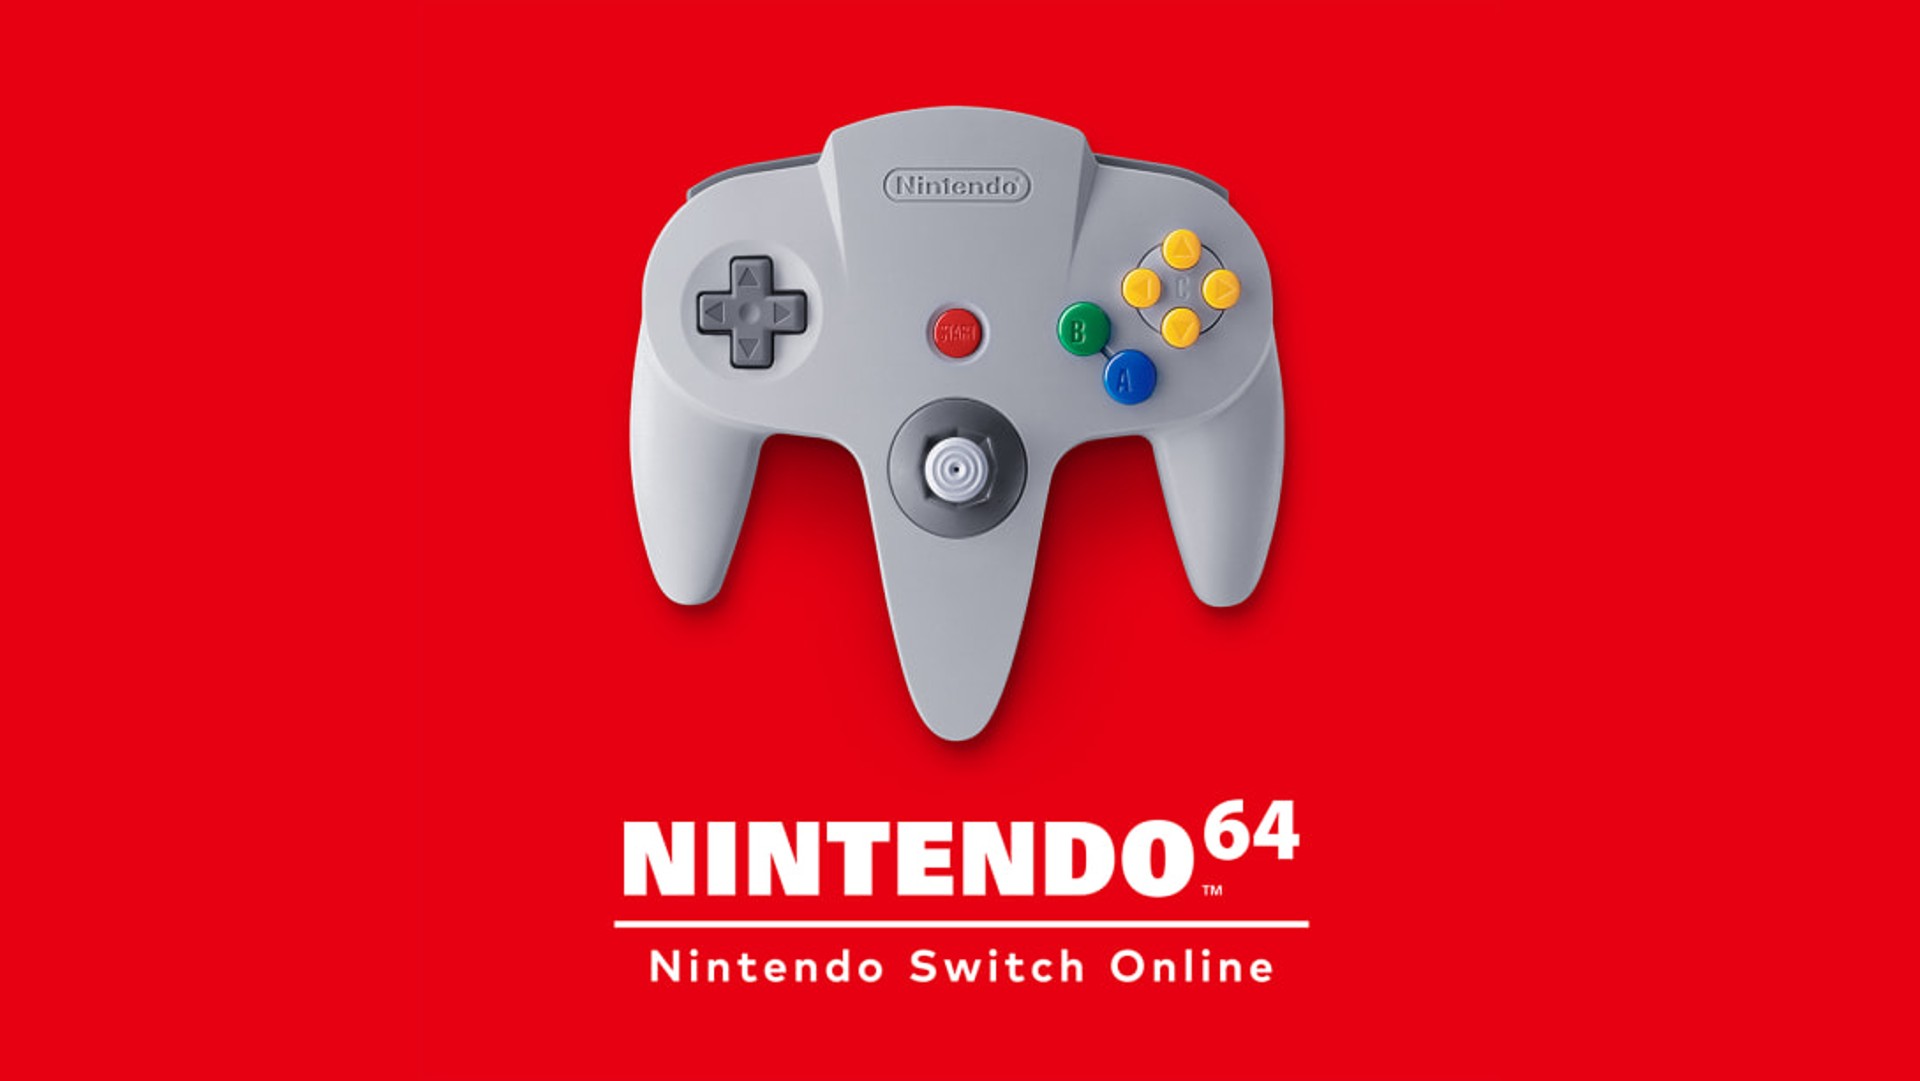 Nintendo รับทราบถึงปัญหาการร้องเรียนเข้ามา เกี่ยวกับเกมของ Nintendo 64